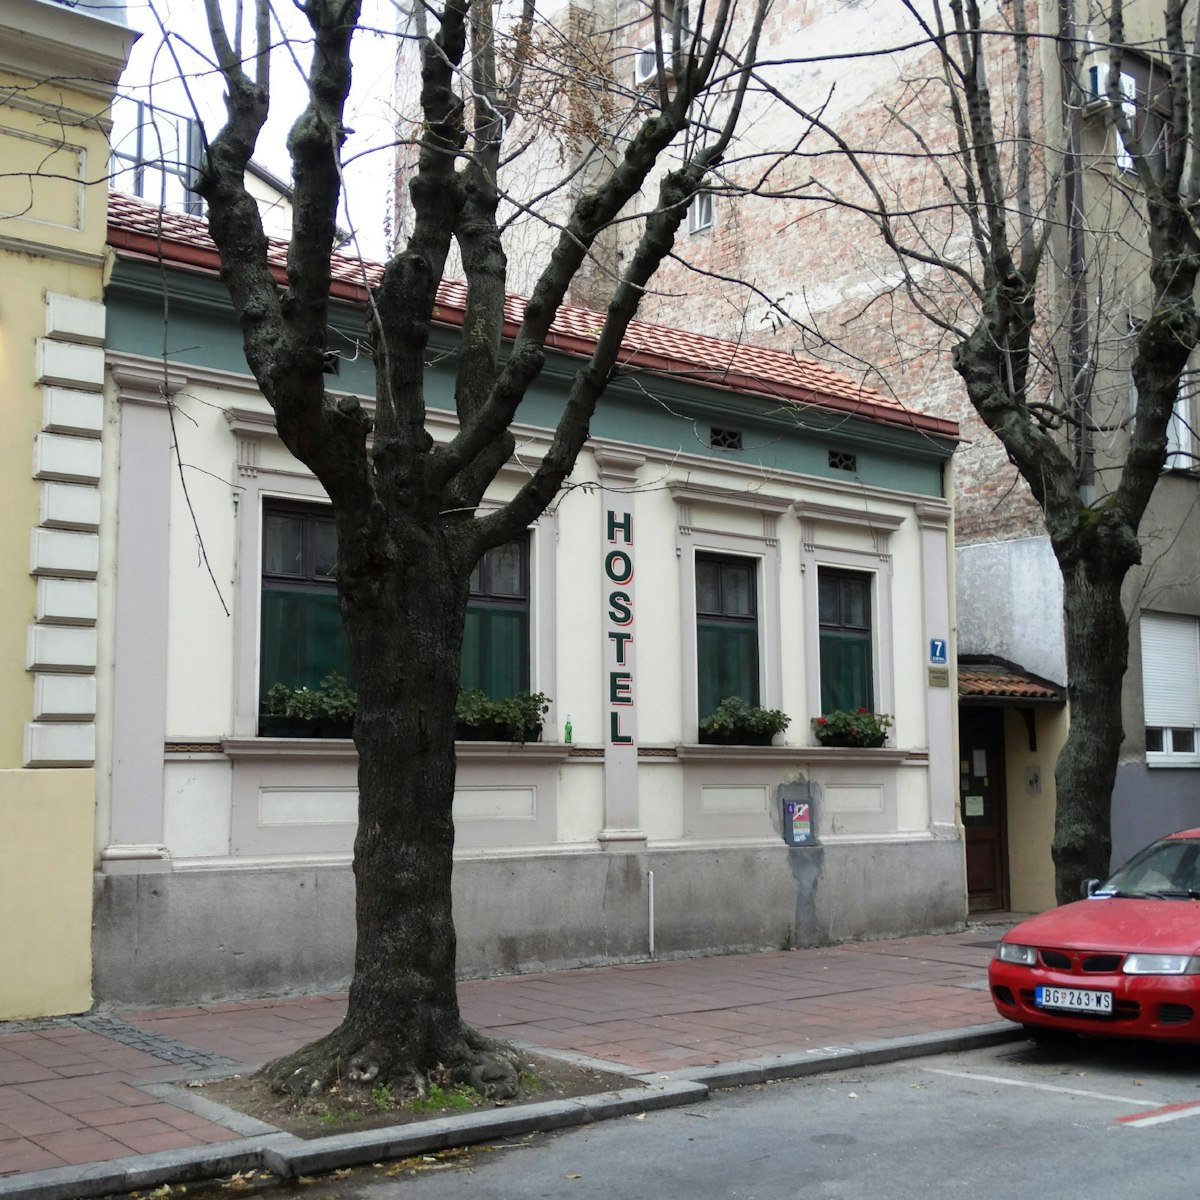 Hedonist Hostel in Dorćol neighbourhood